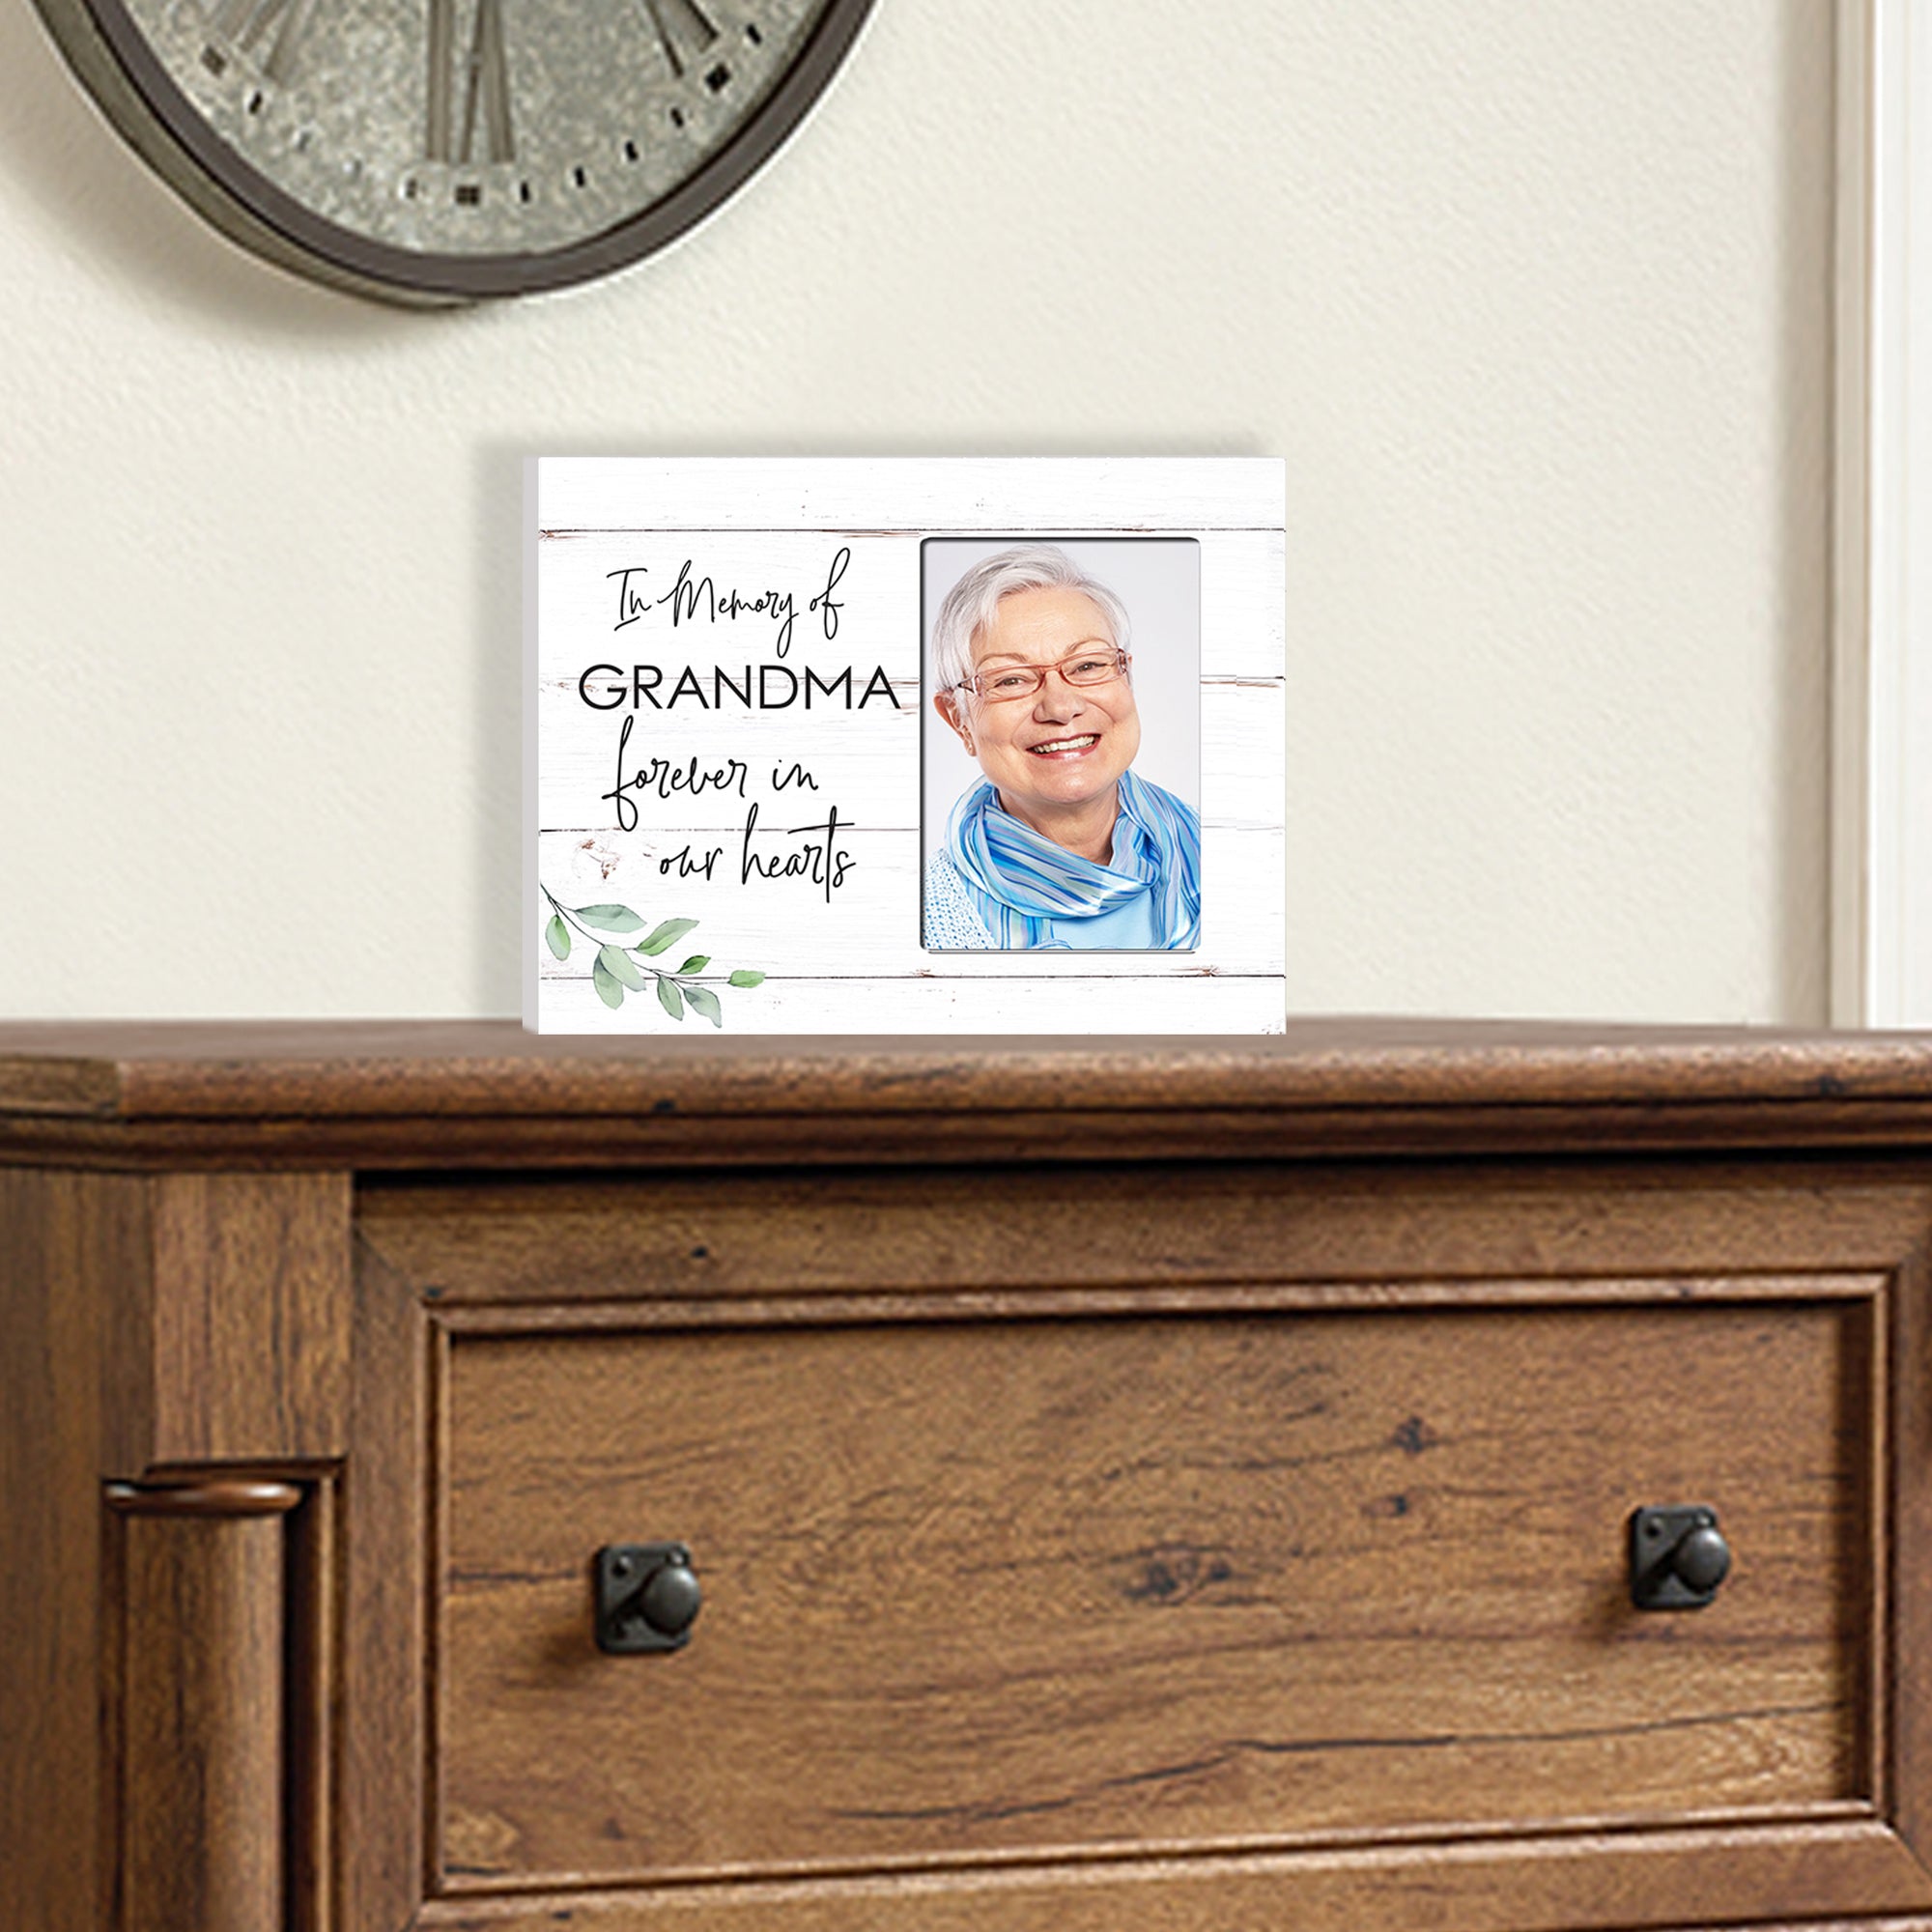 Sentimental Human Memorial Photo Frame Gift Bereavement Gift Idea - In memory of Grandma